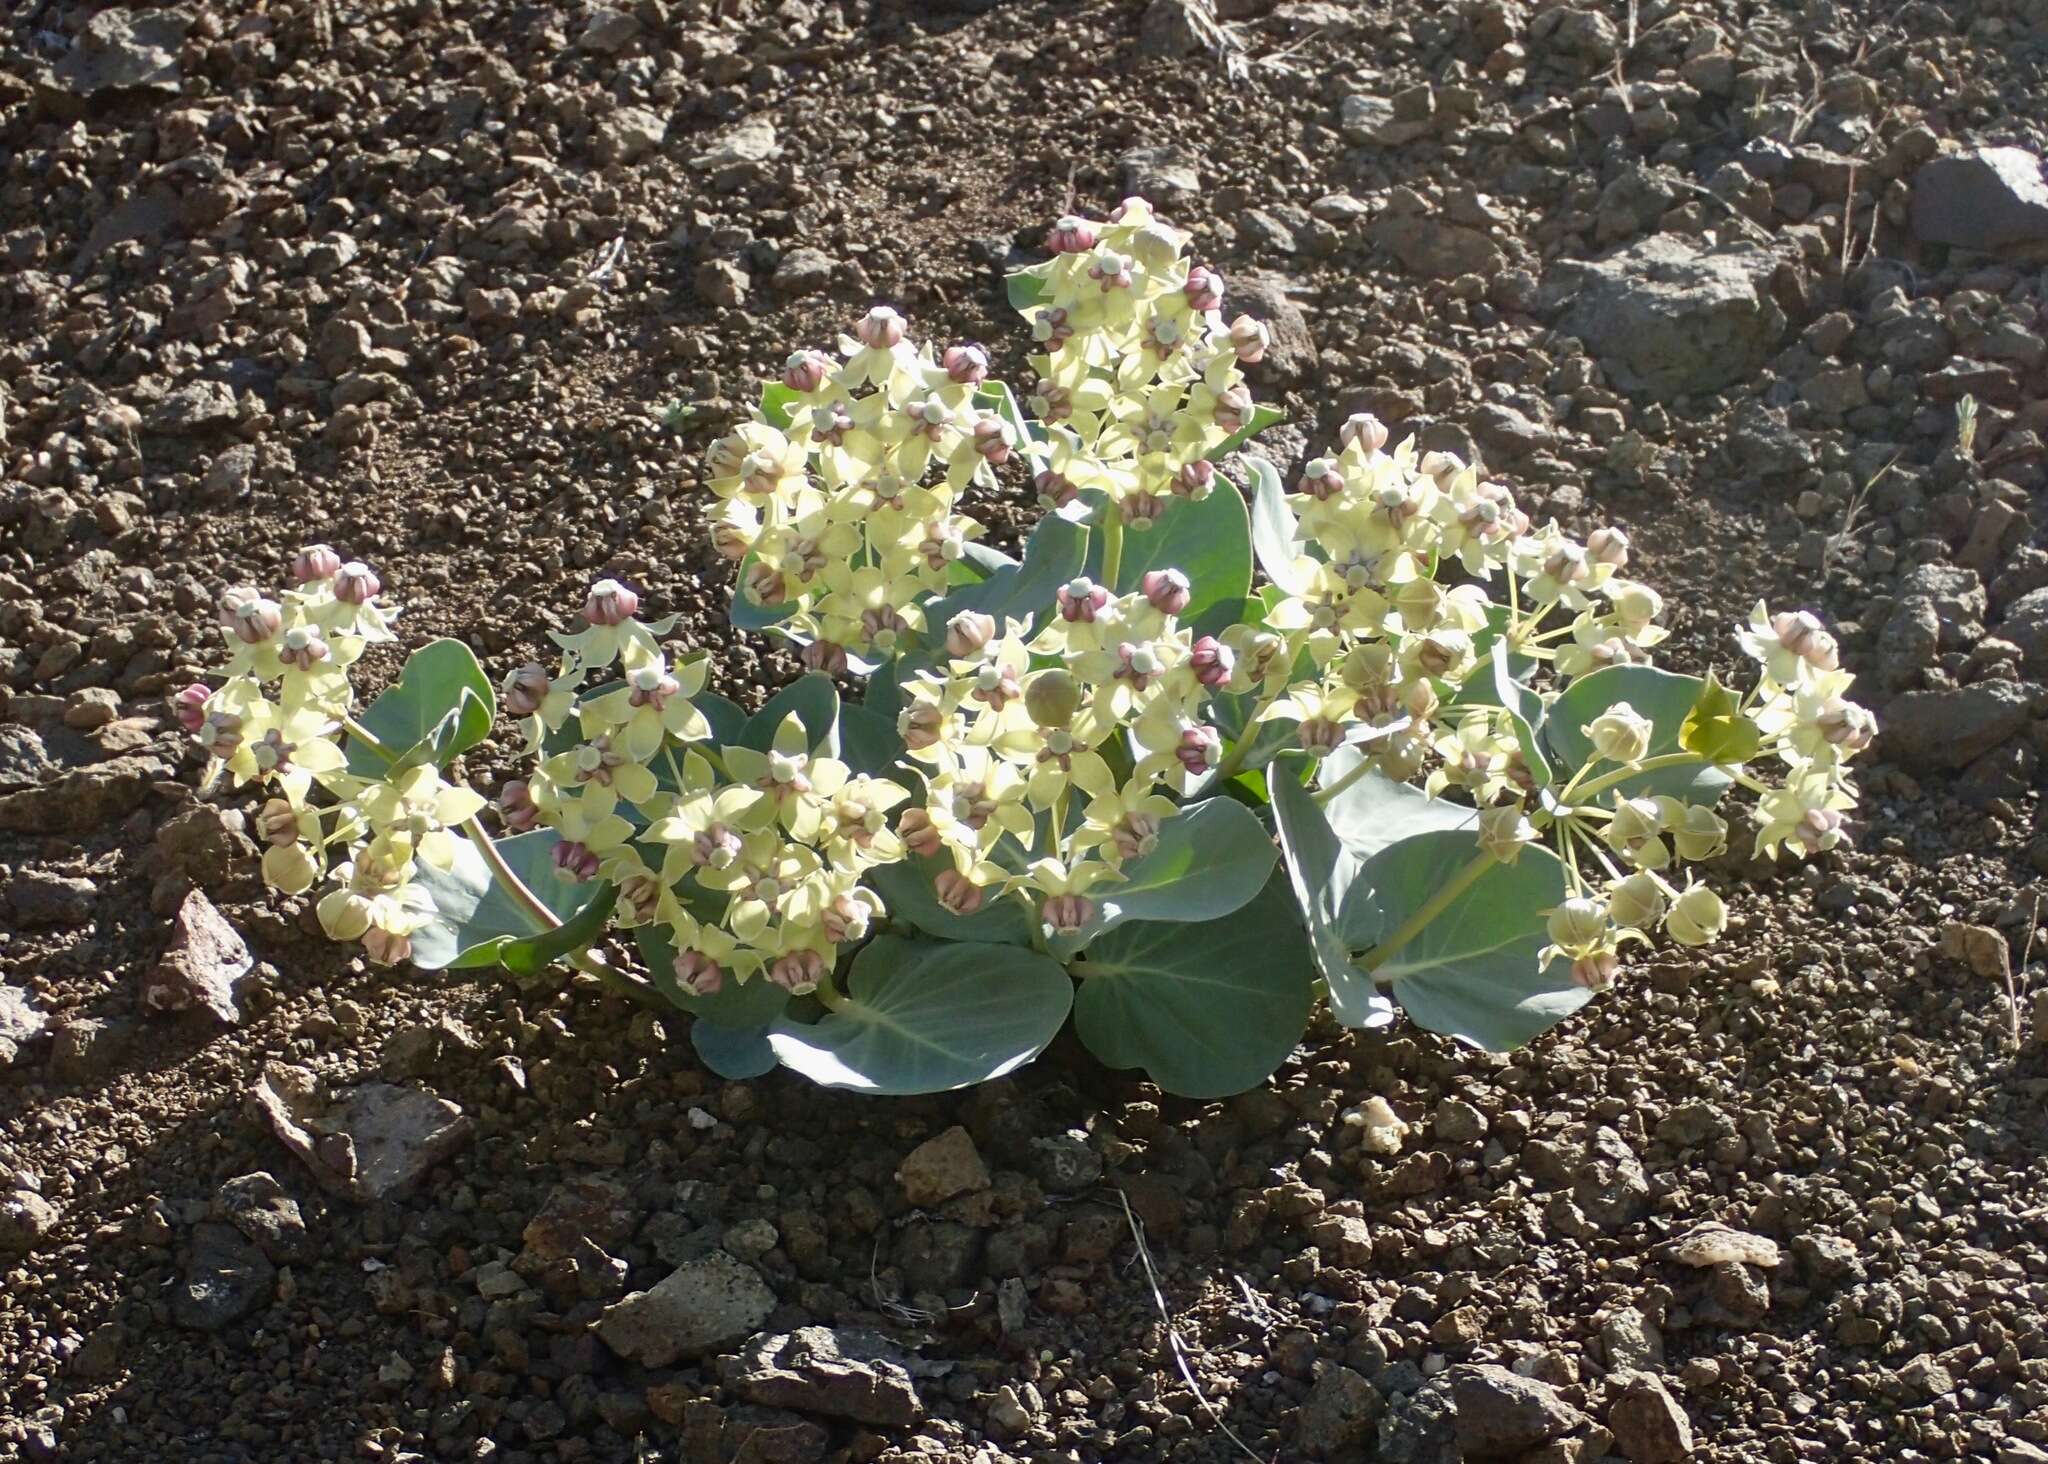 Image of Davis' milkweed